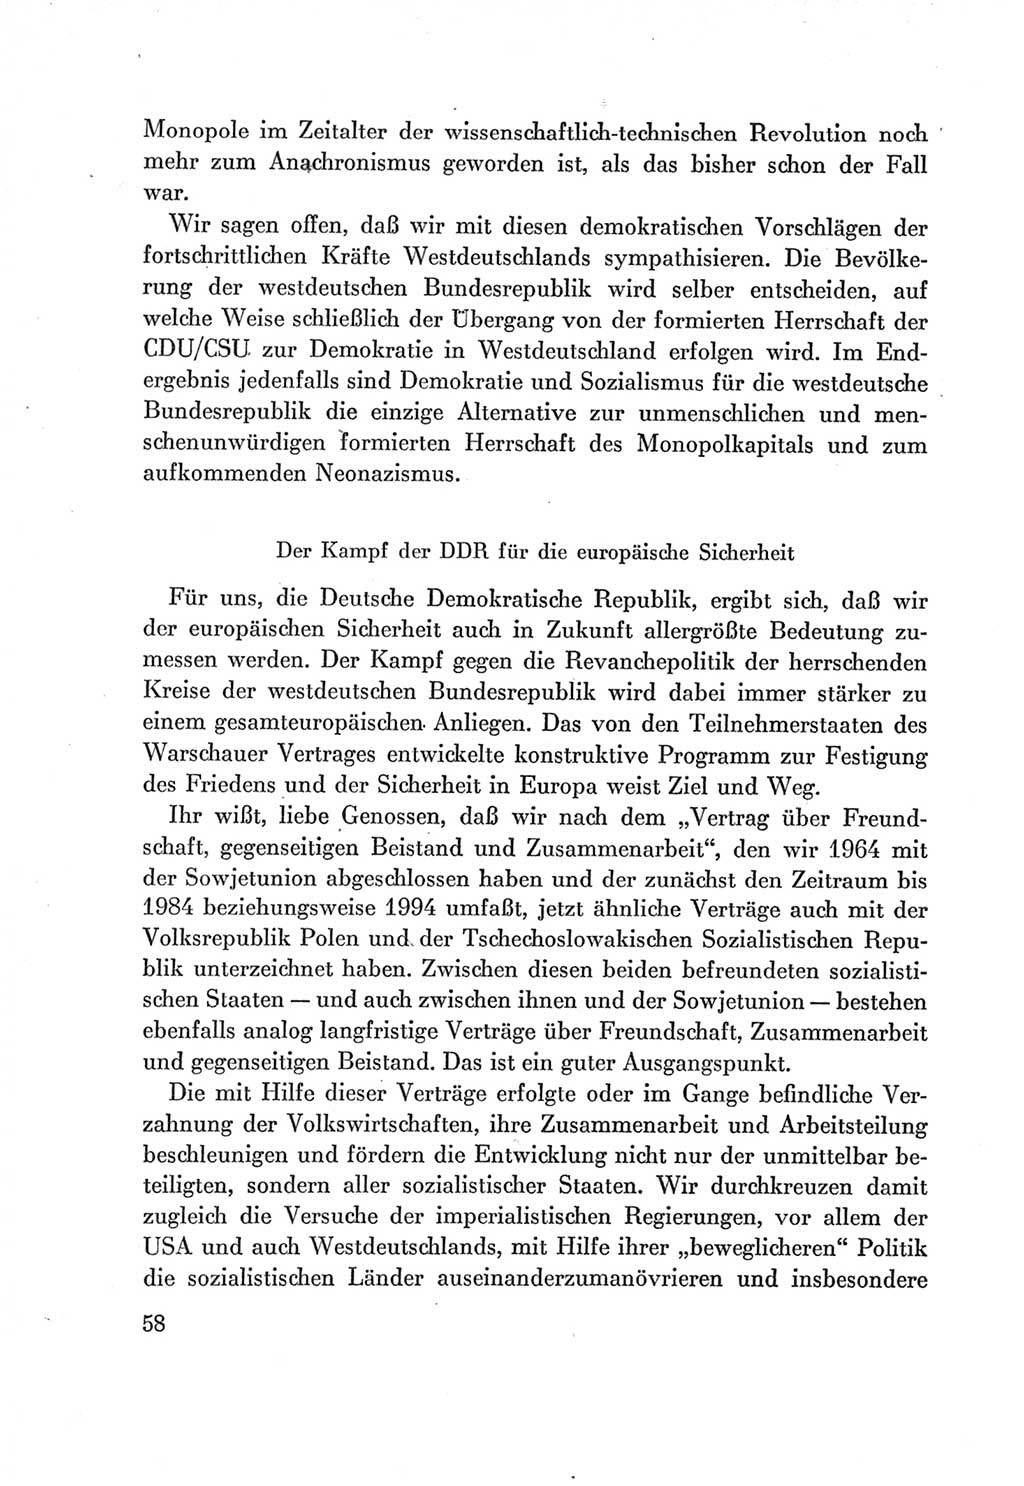 Protokoll der Verhandlungen des Ⅶ. Parteitages der Sozialistischen Einheitspartei Deutschlands (SED) [Deutsche Demokratische Republik (DDR)] 1967, Band Ⅰ, Seite 58 (Prot. Verh. Ⅶ. PT SED DDR 1967, Bd. Ⅰ, S. 58)